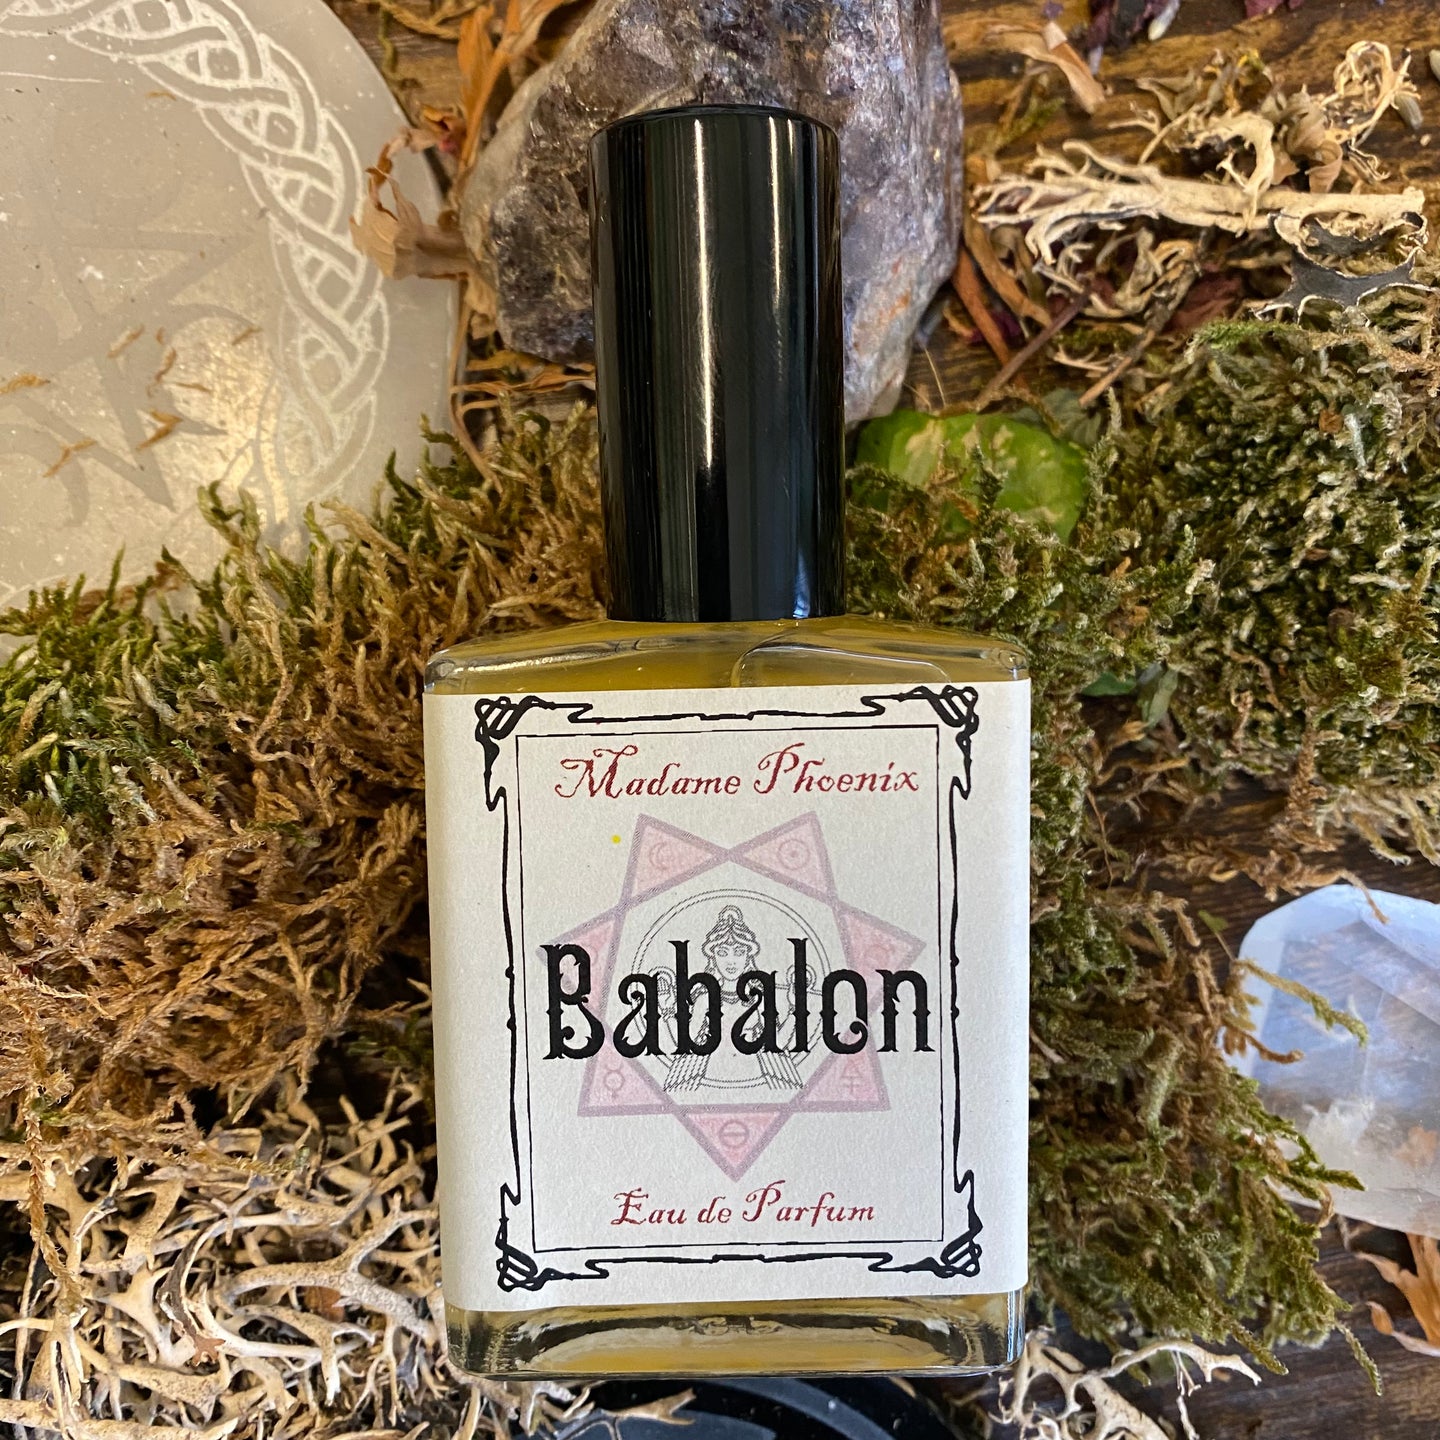 Scarlet Woman Babalon Perfume